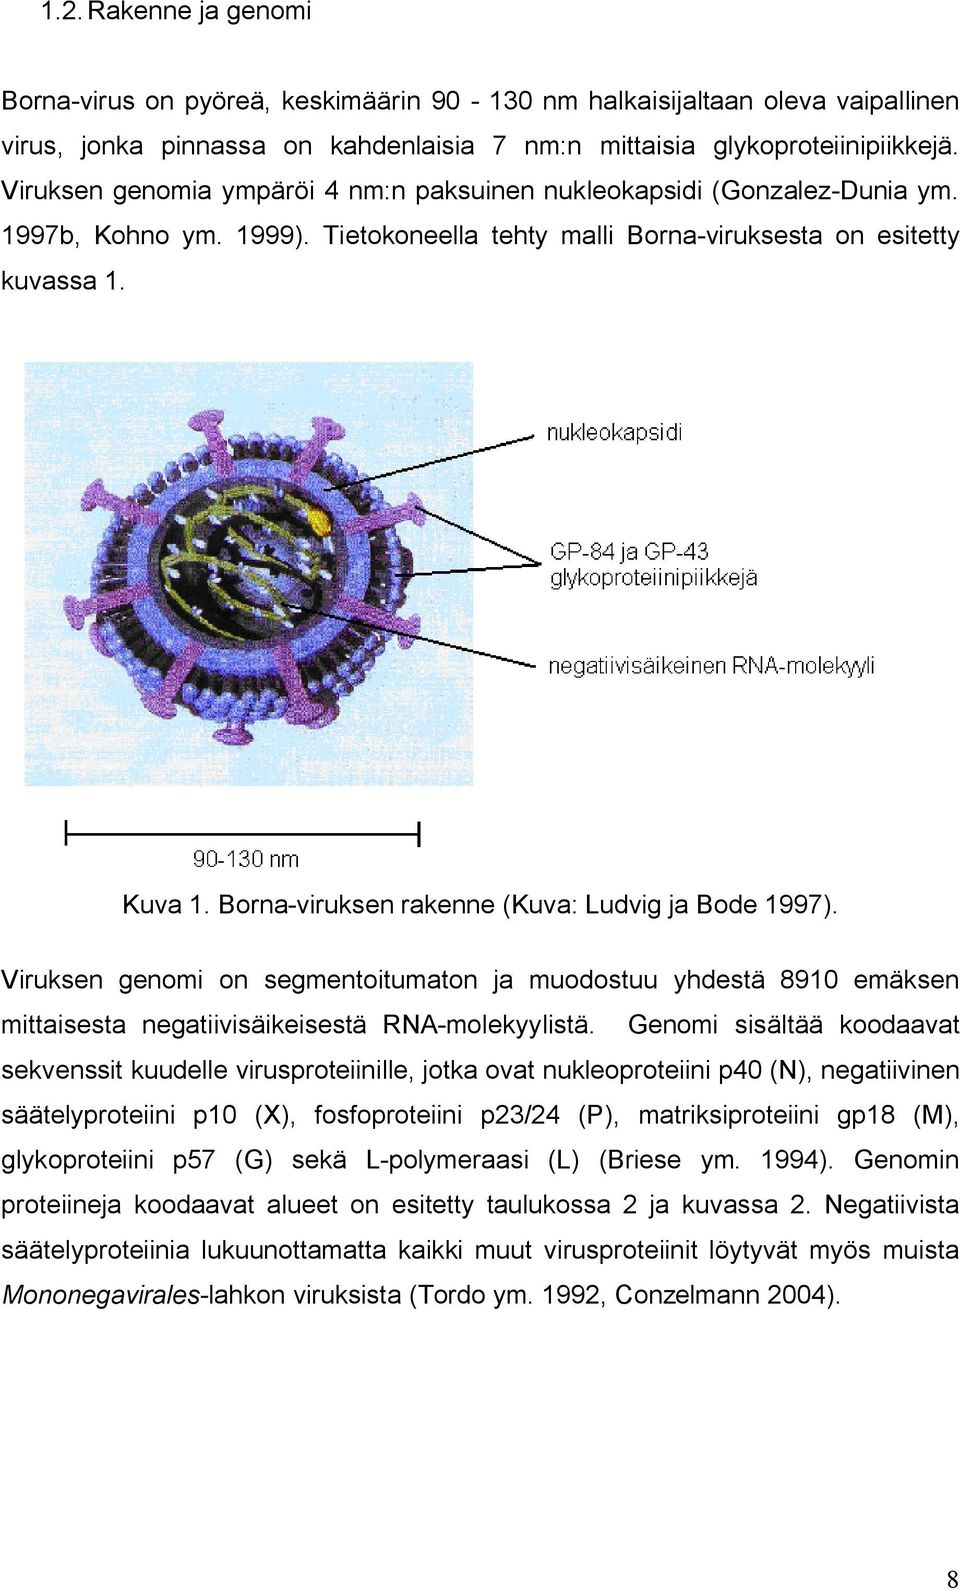 Borna viruksen rakenne (Kuva: Ludvig ja Bode 1997). Viruksen genomi on segmentoitumaton ja muodostuu yhdestä 8910 emäksen mittaisesta negatiivisäikeisestä RNA molekyylistä.